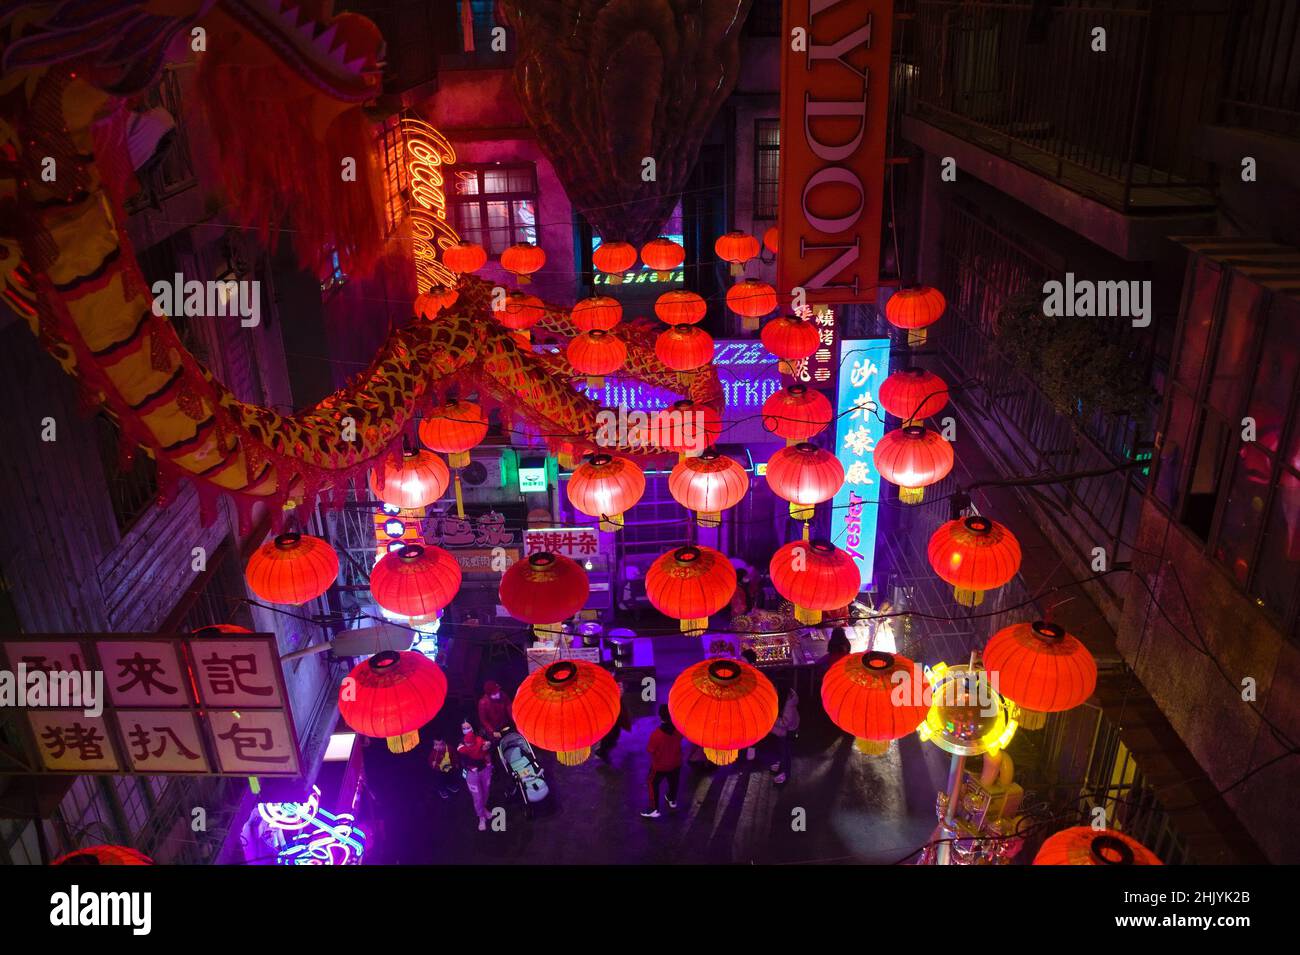 Lanterne rosse in mostra durante il Capodanno lunare a Shenzhen, Cina Foto Stock